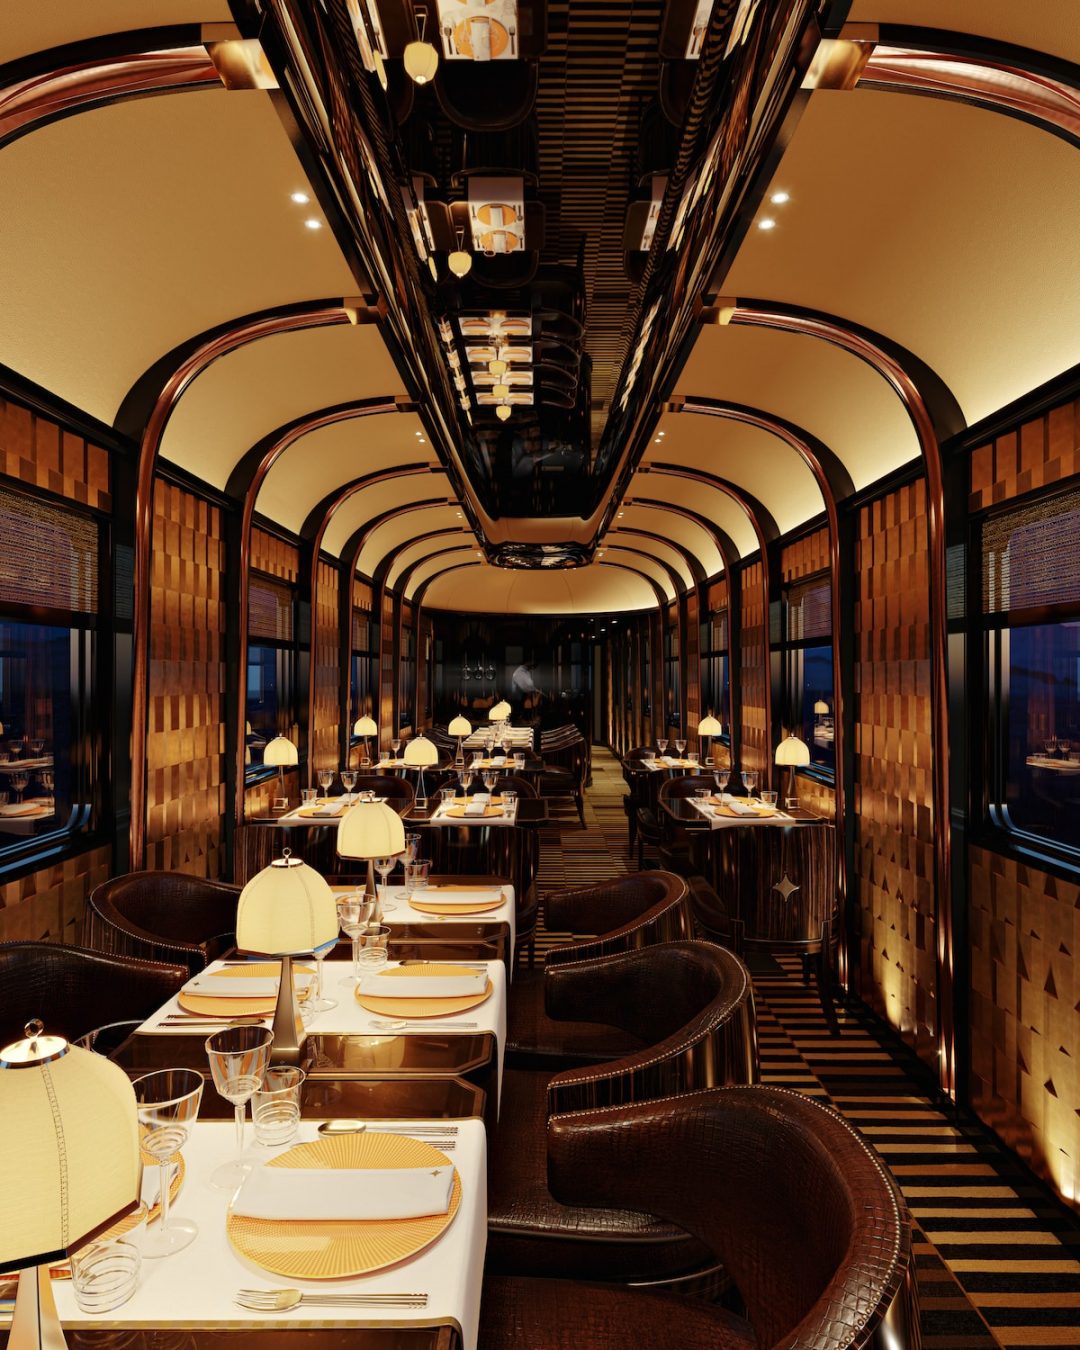 Orient Express Il Restauro Del Treno Mito Dove Viaggi